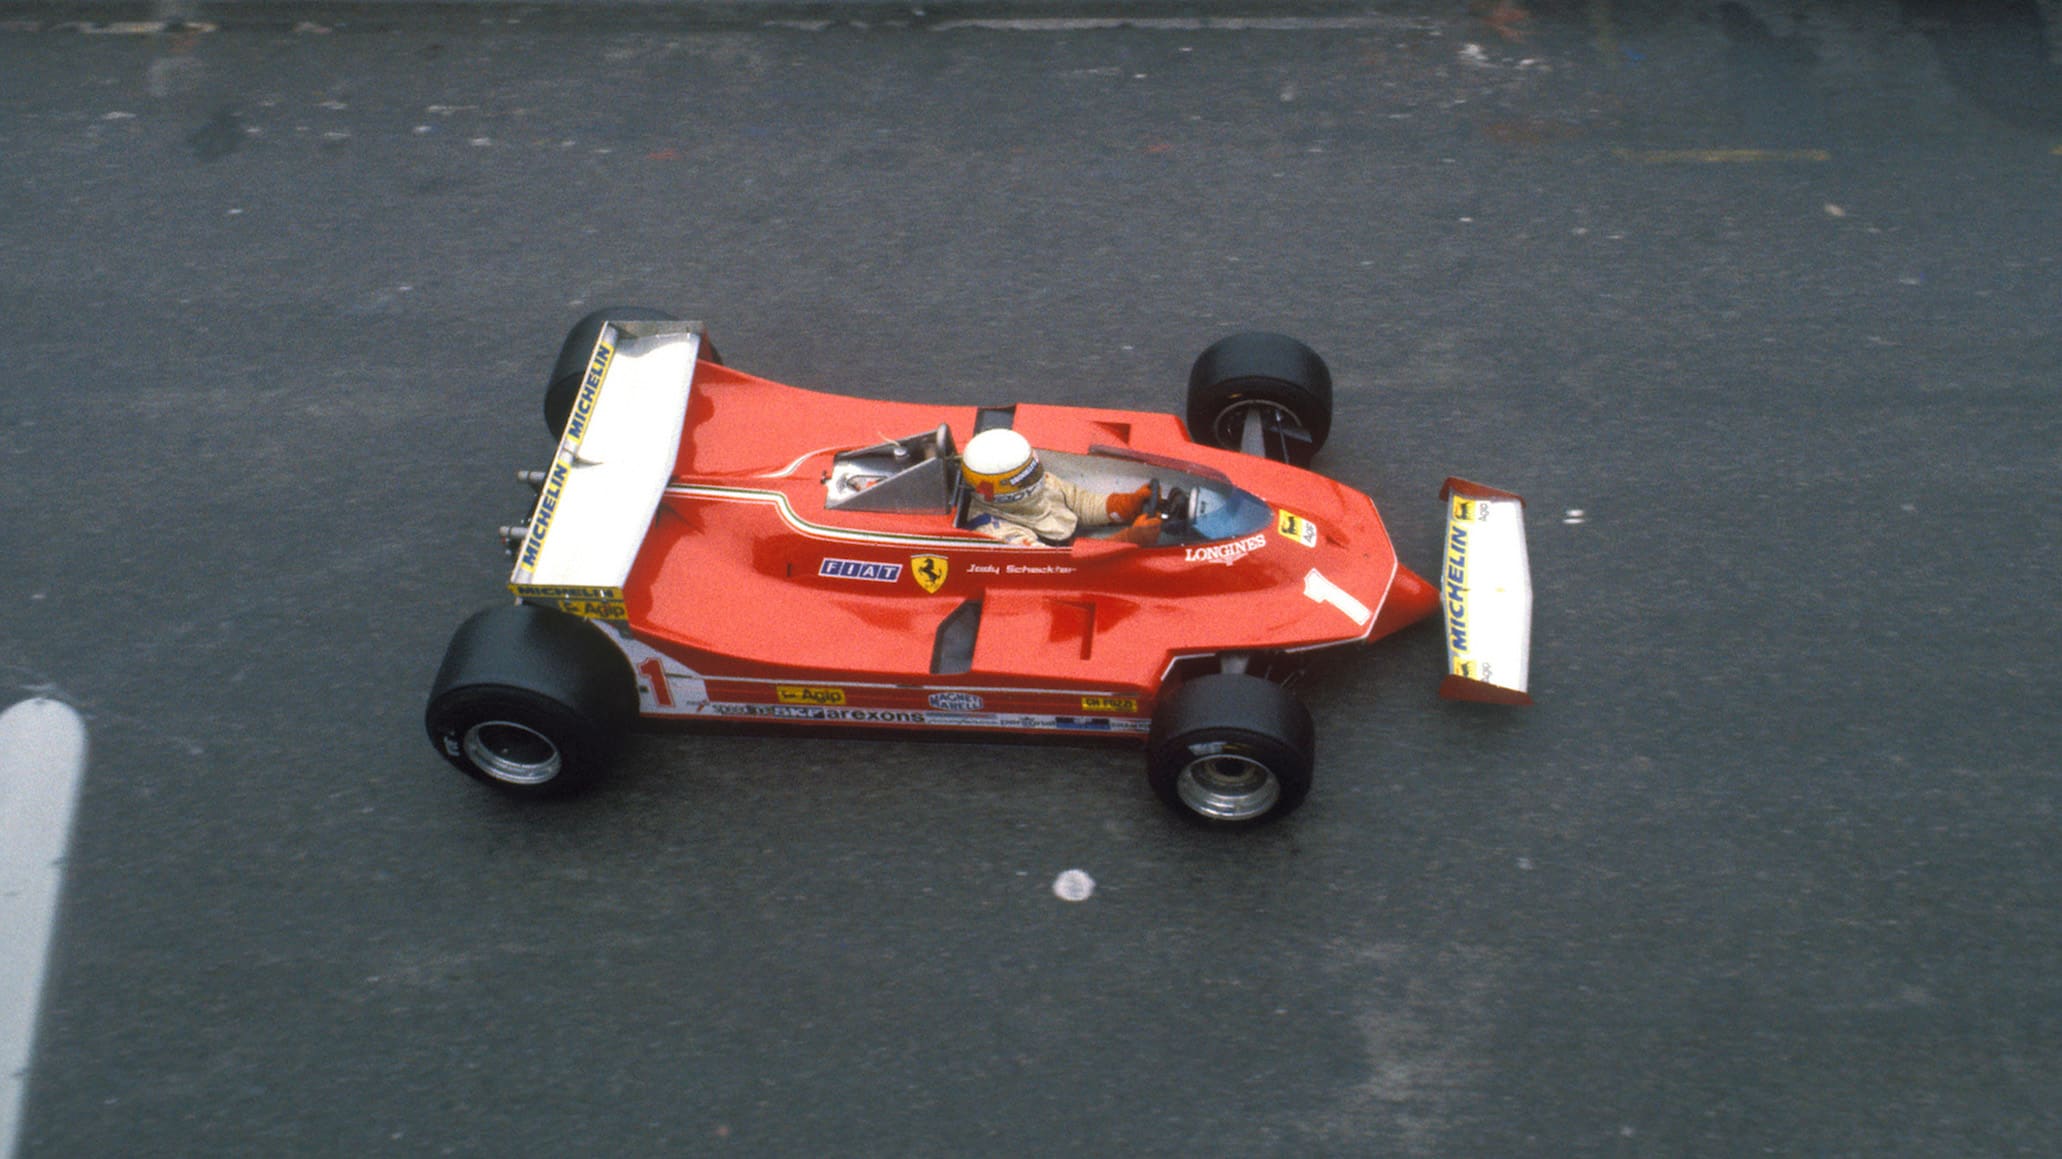 Jody Scheckter in Ferrari 312T5 in 1980